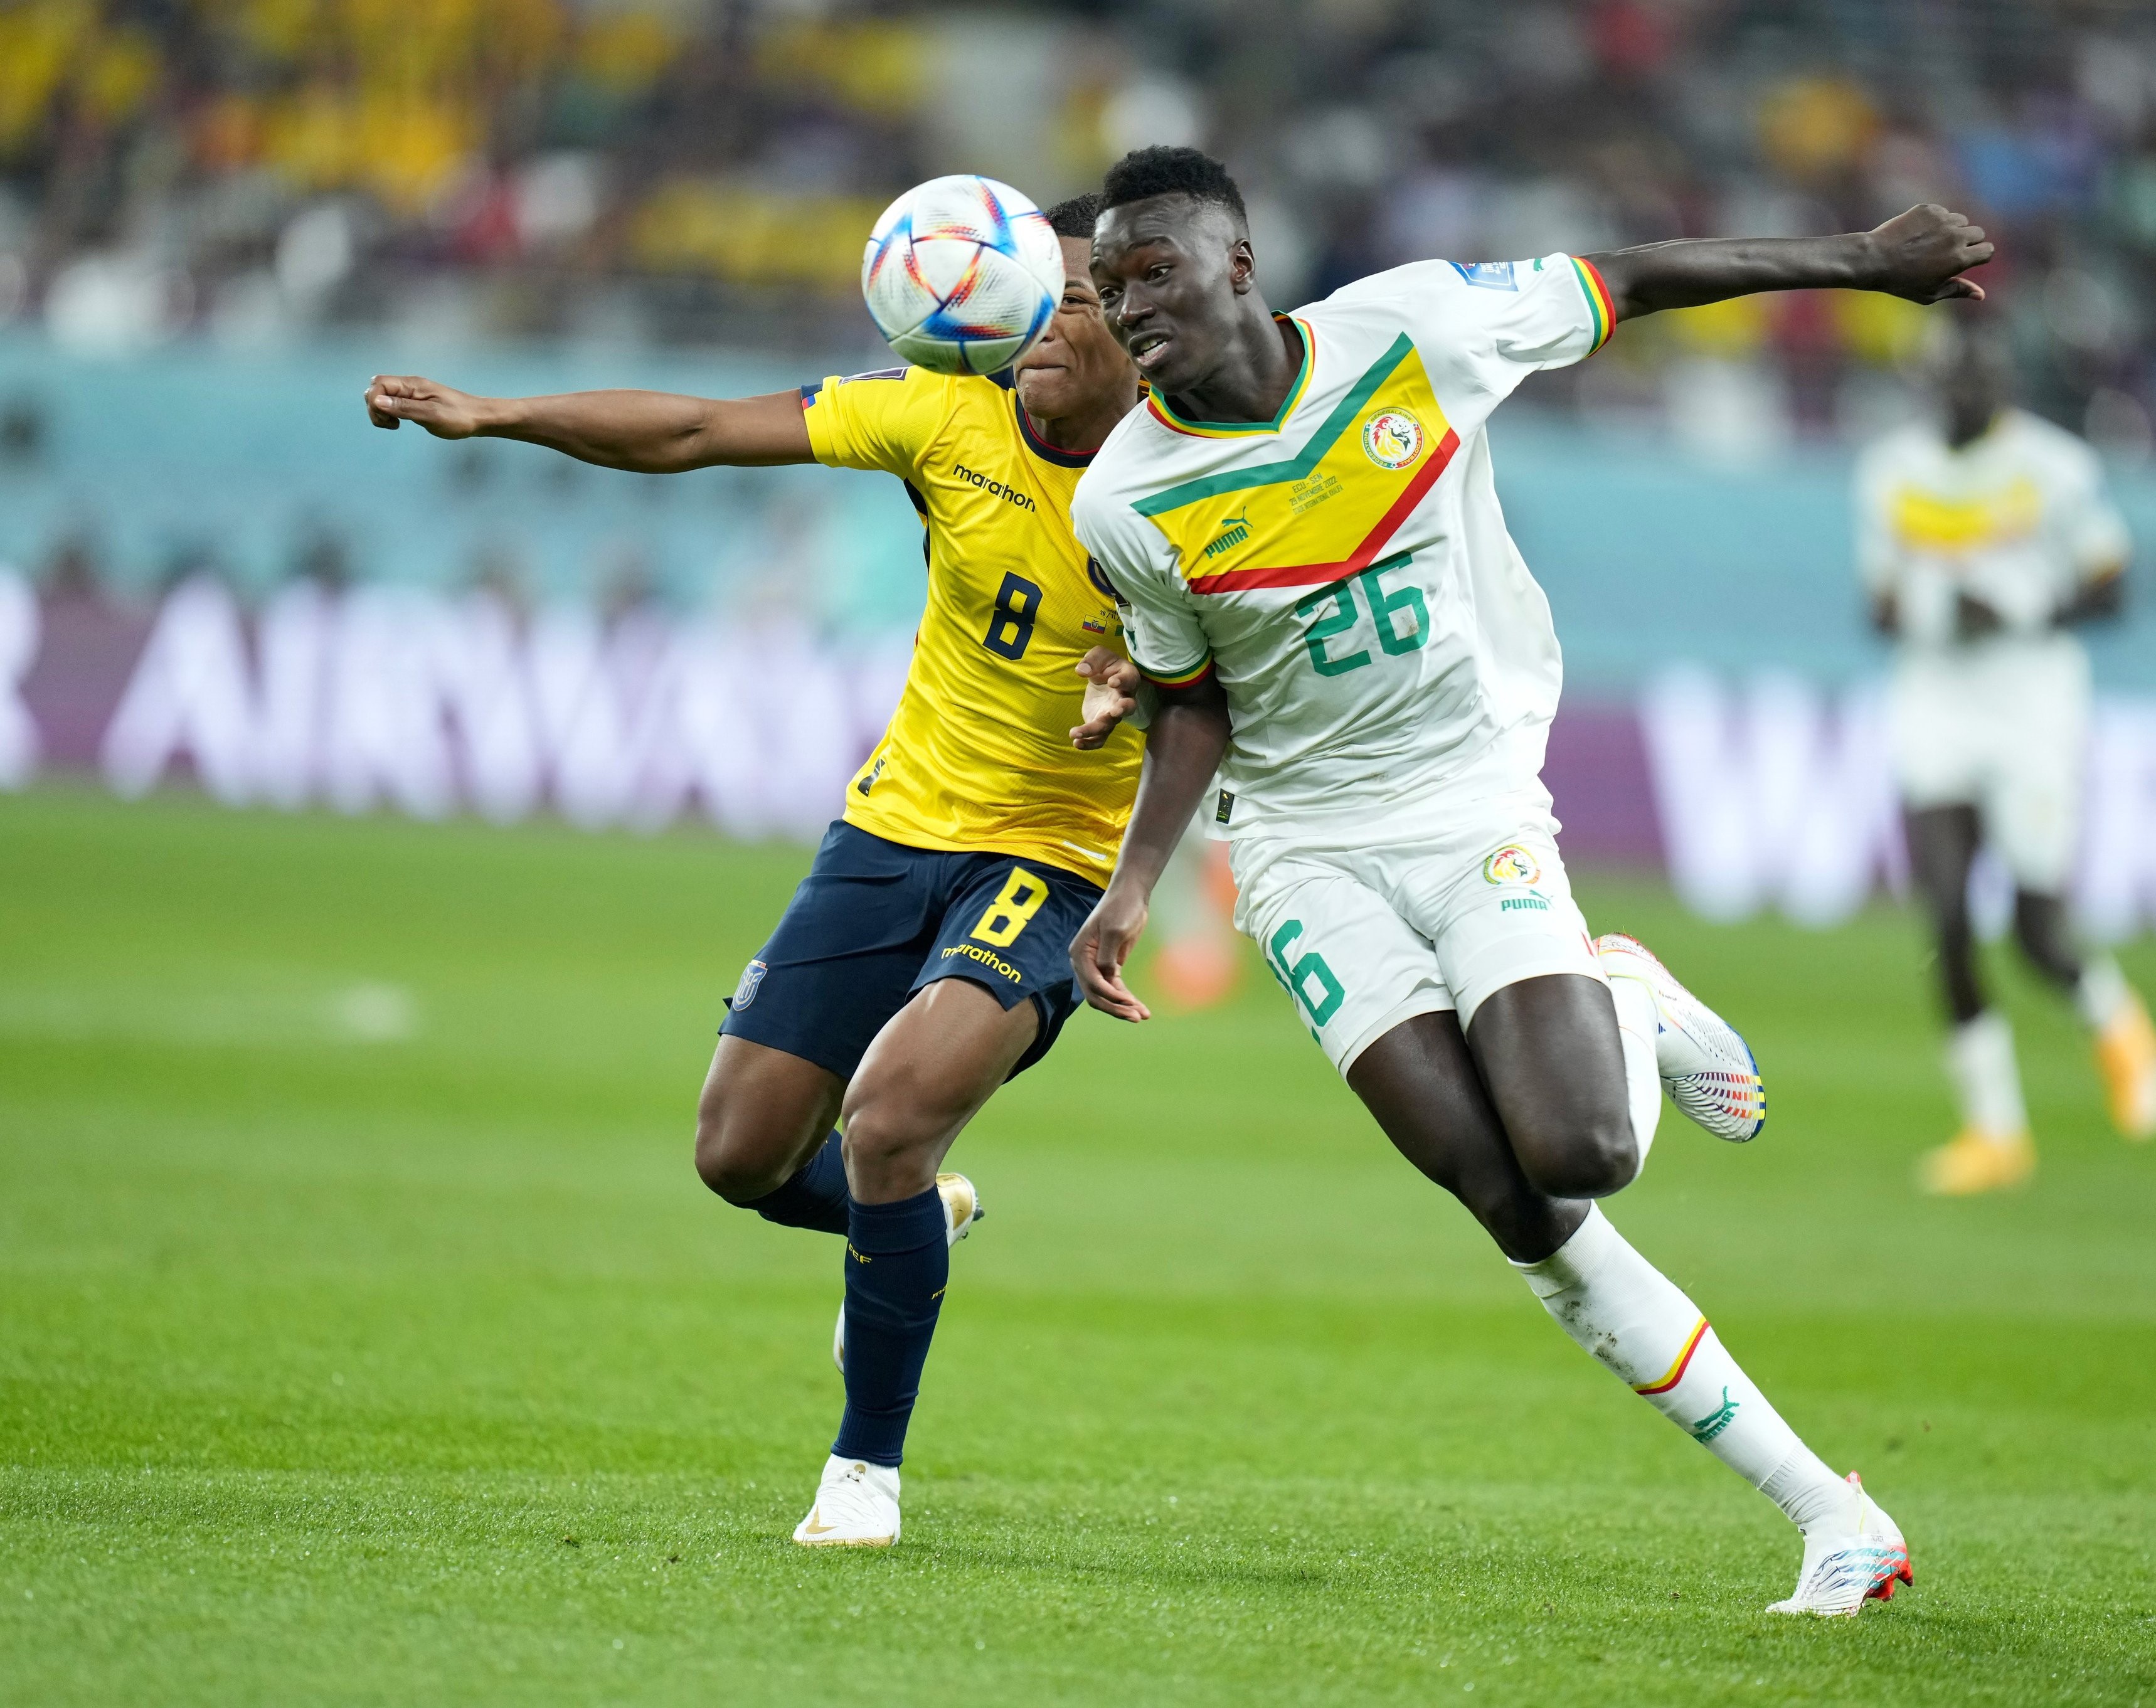 منافسة على الكرة بين لاعب المنتخب السنغالي ونظيره الاكوادوري